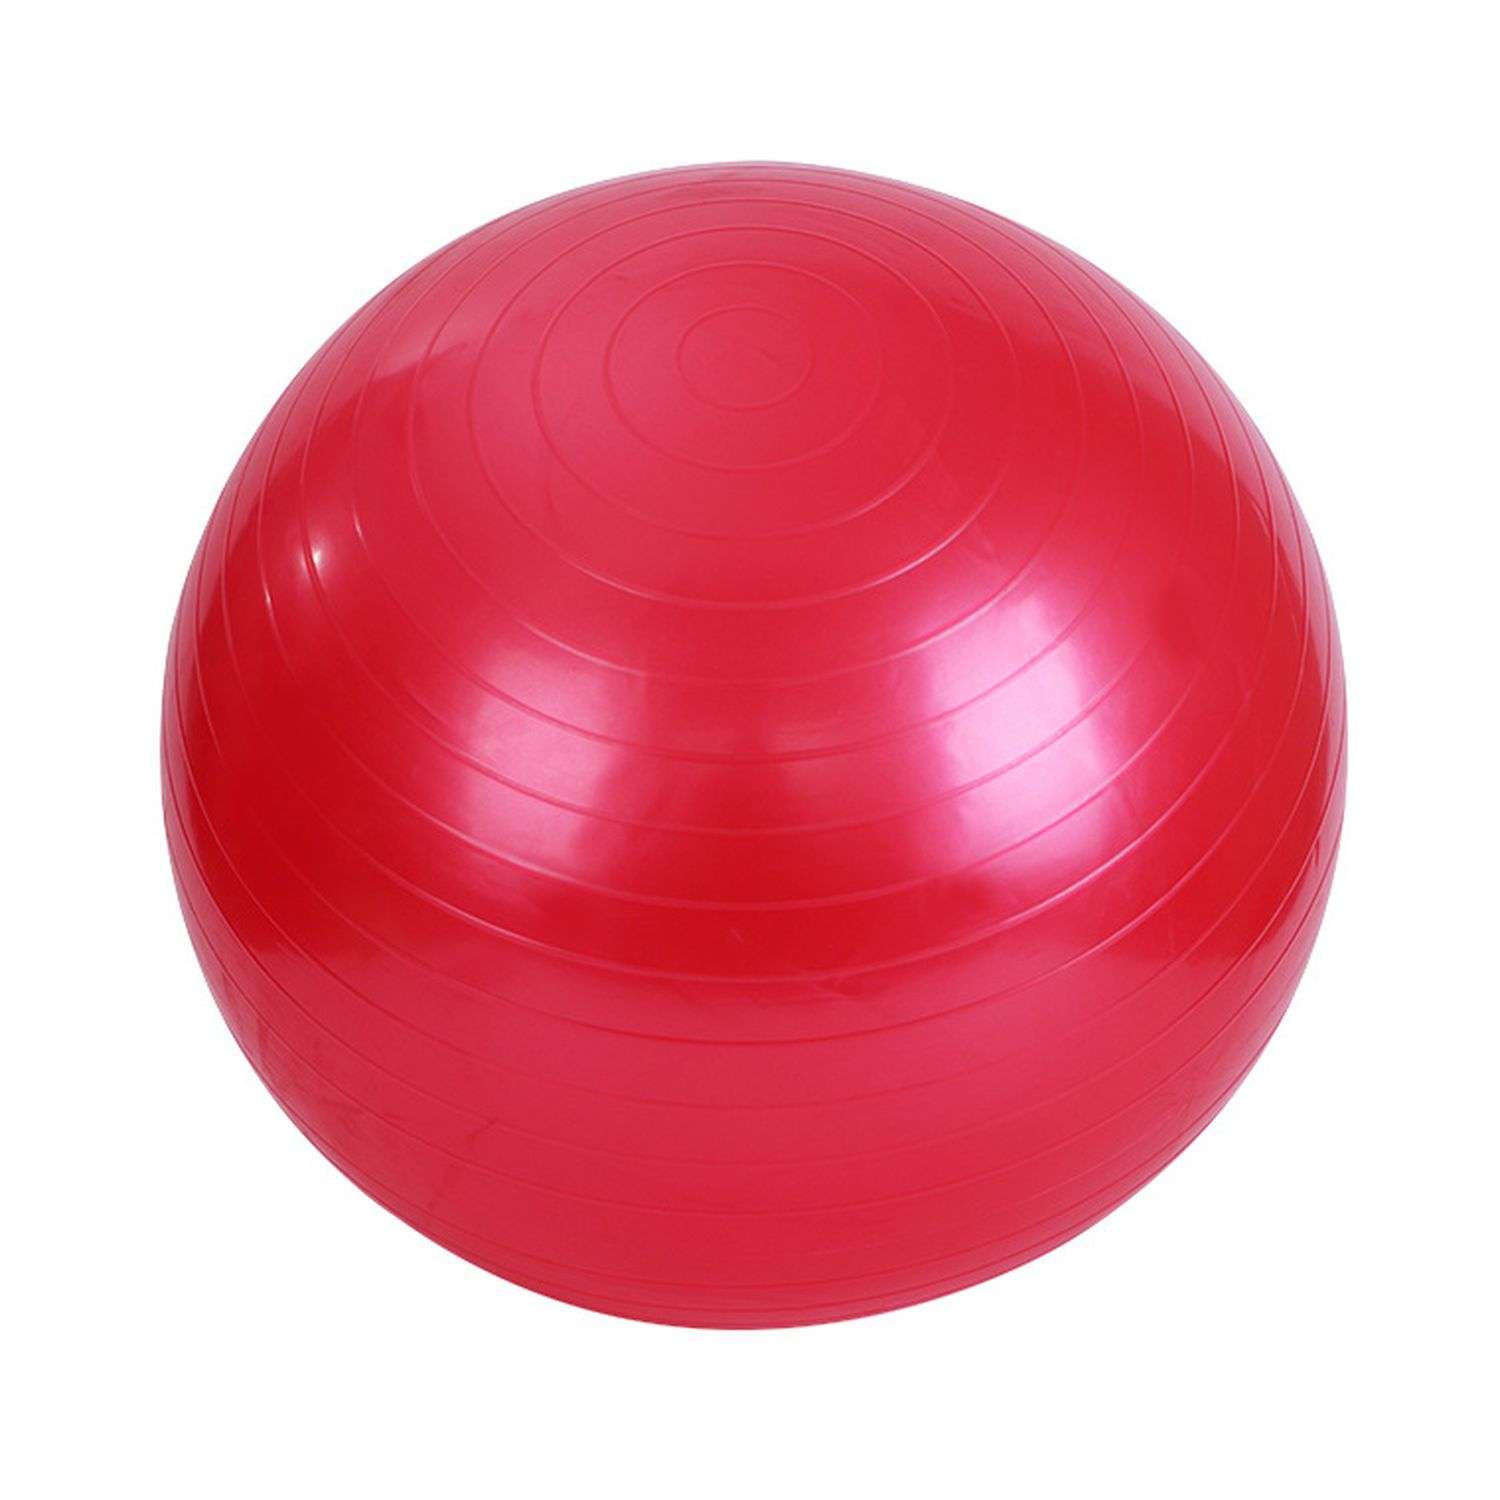 Фитбол Beroma с антивзрывным эффектом 55 см красный - фото 1